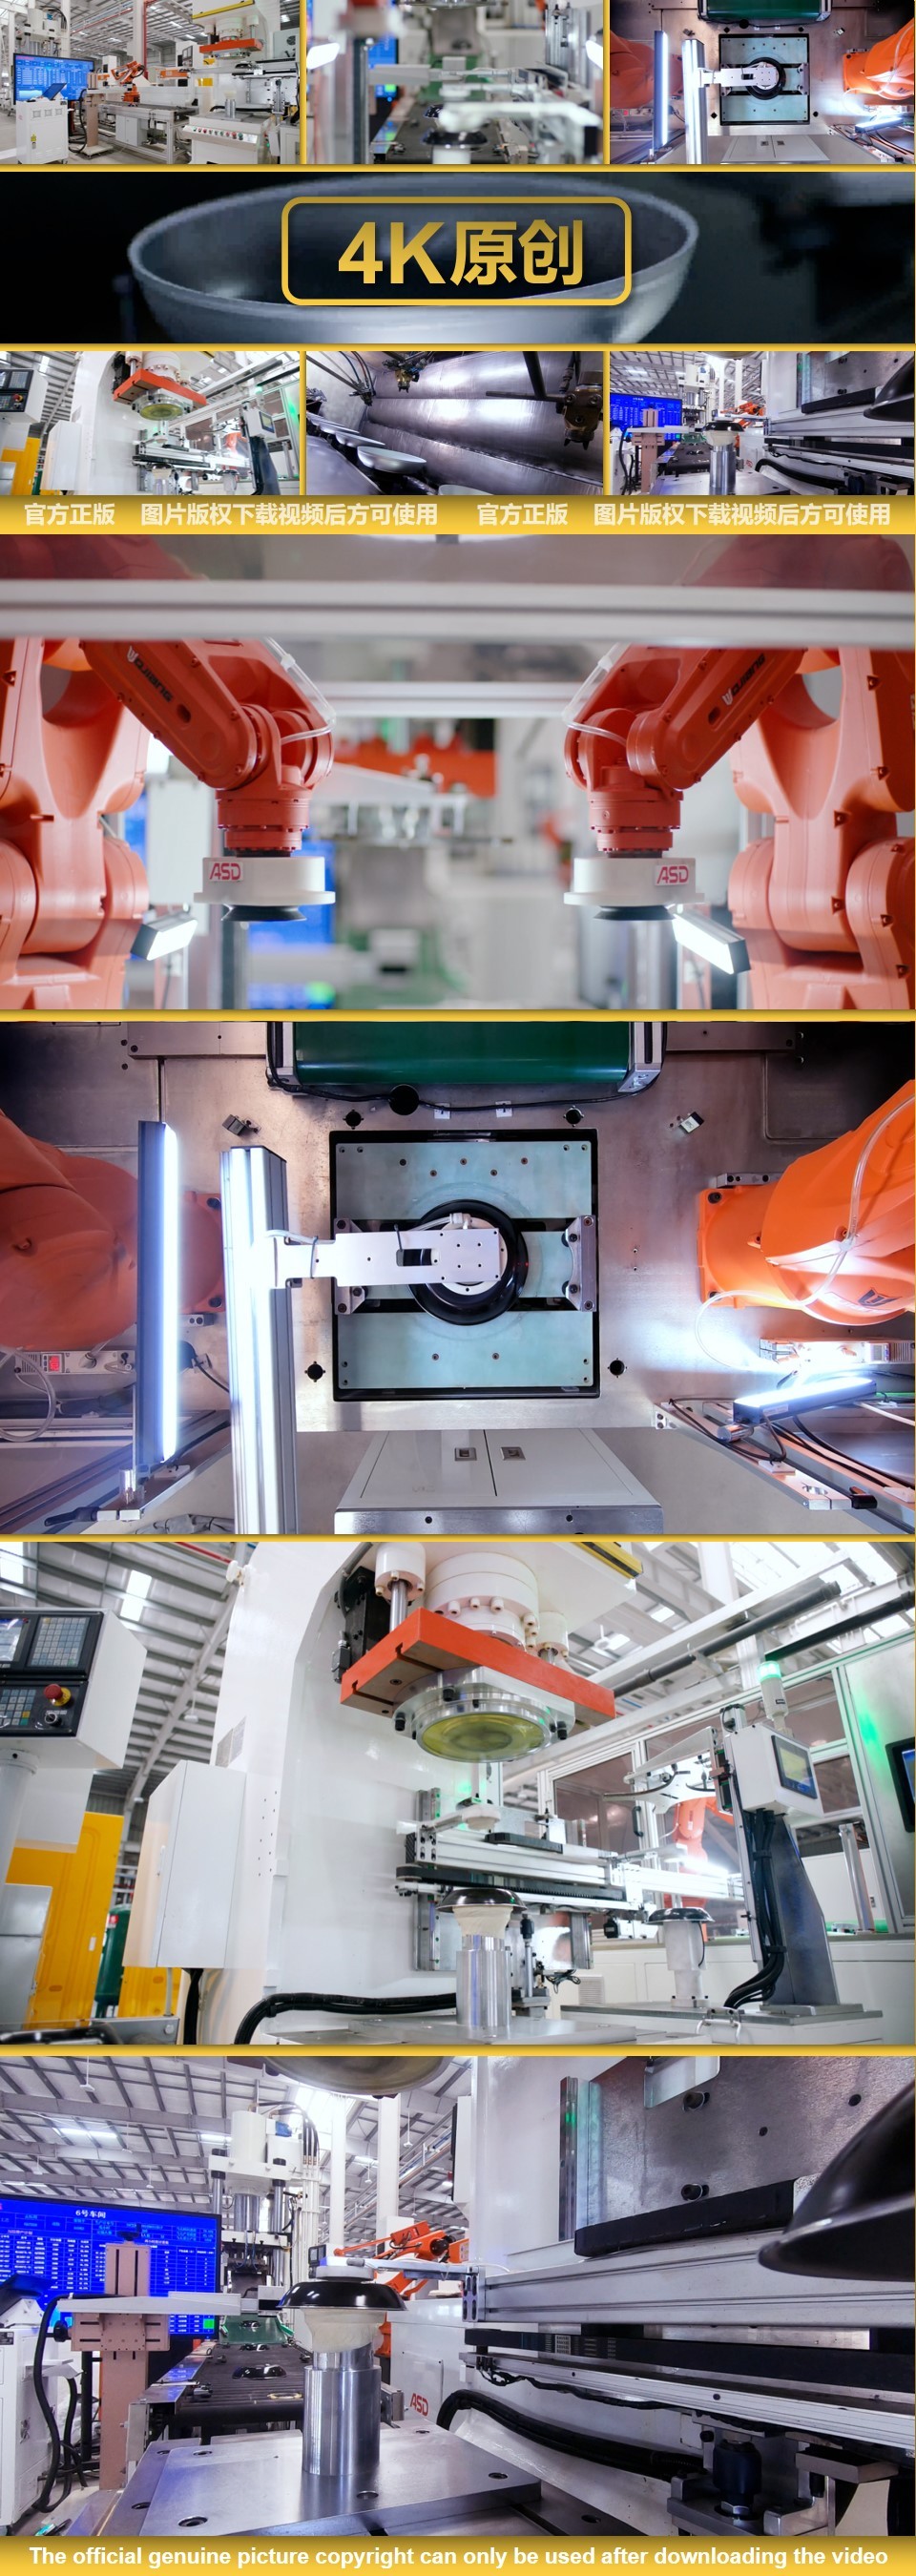 碗具工厂 工厂设施智能车间 机械化生产线